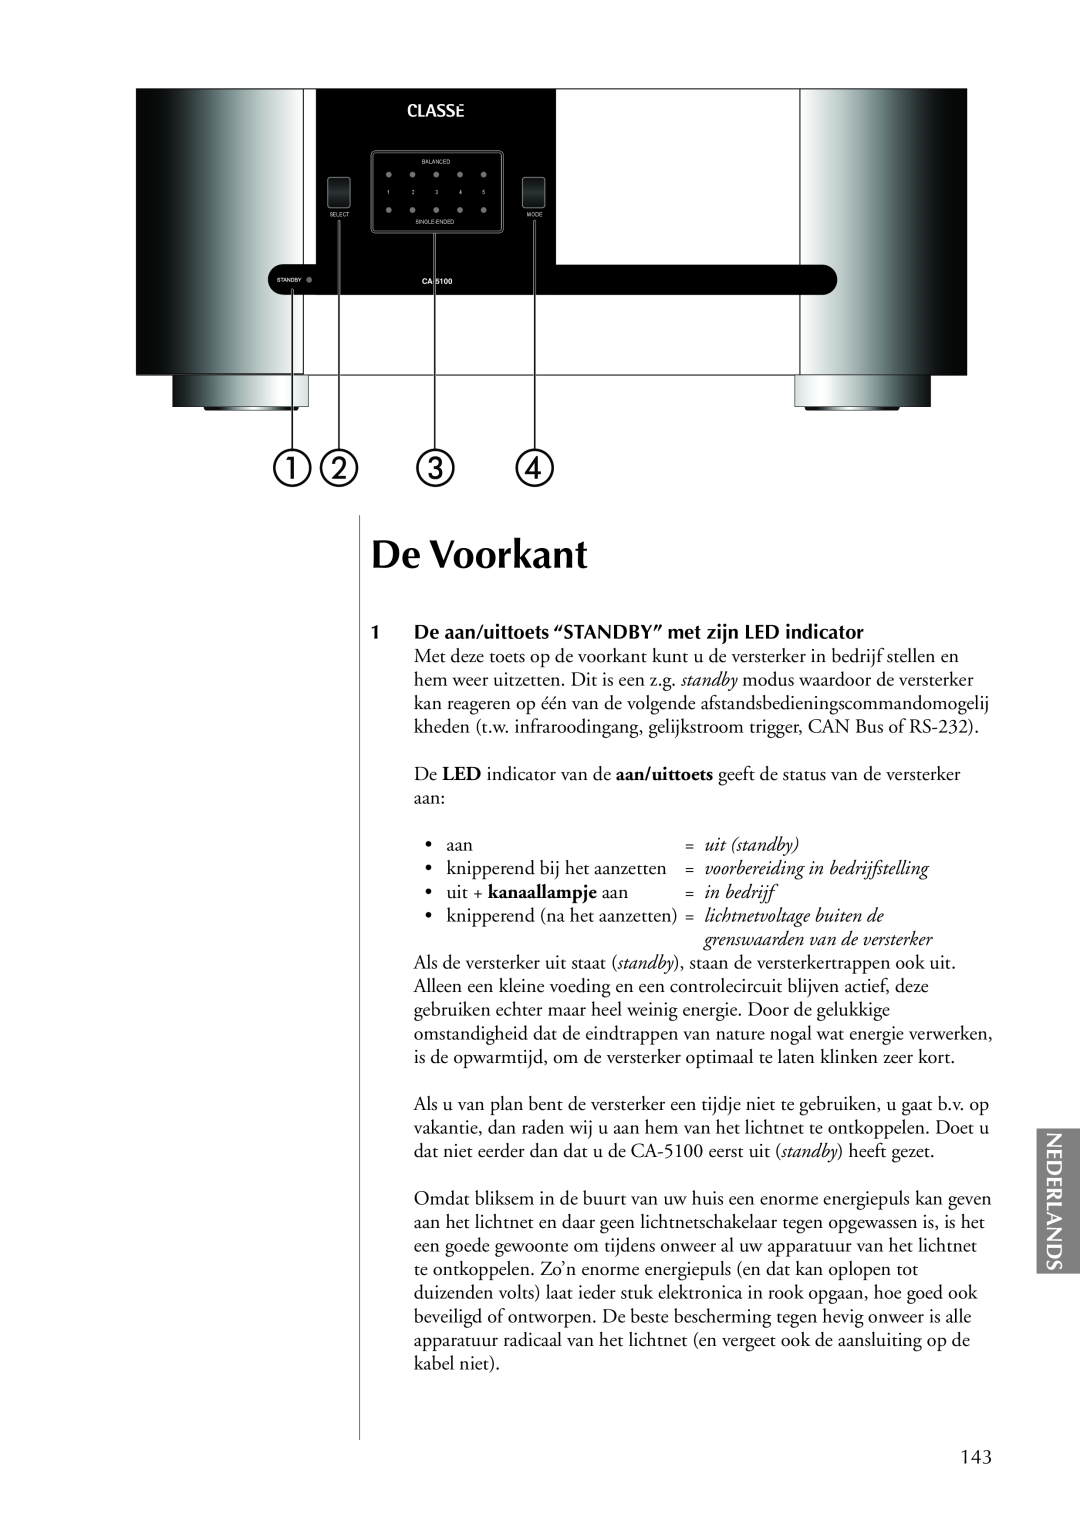 Classe Audio CA-5100 De Voorkant, Nederlands, 1De aan/uittoets “STANDBY” met zijn LED indicator, = uit standby, in bedrijf 